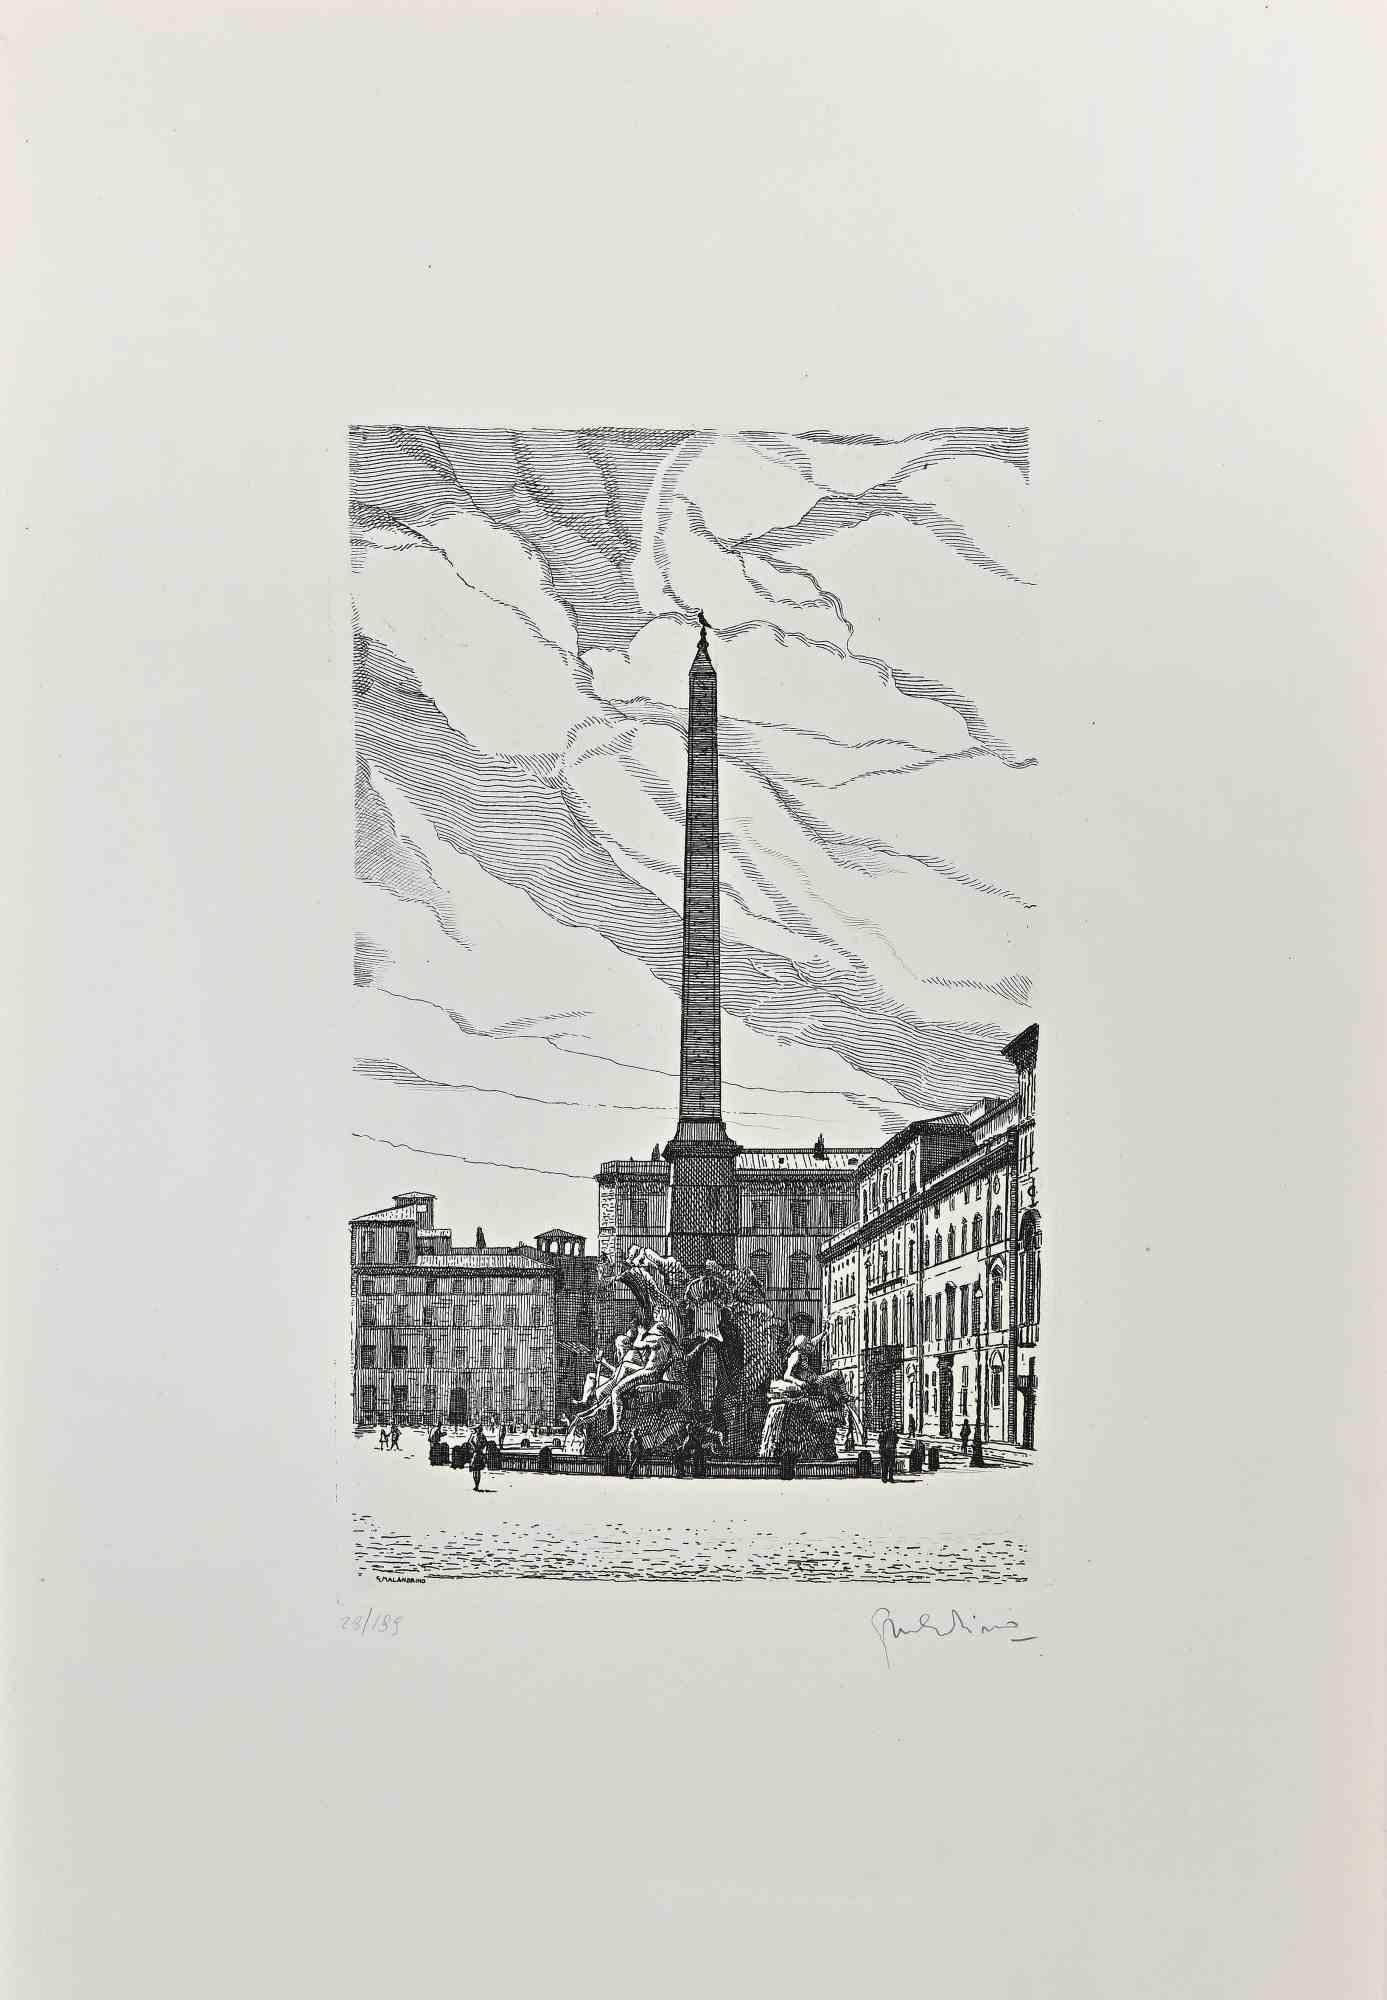 Fountain of the Four Rivers ist ein zeitgenössisches Kunstwerk, das 1970 von dem italienischen Künstler Giuseppe Malandrino (Modica, 1910 - Rom, 1979) geschaffen wurde.

Radierung auf Karton. Handsigniert mit Bleistift unten rechts.

Nummeriert